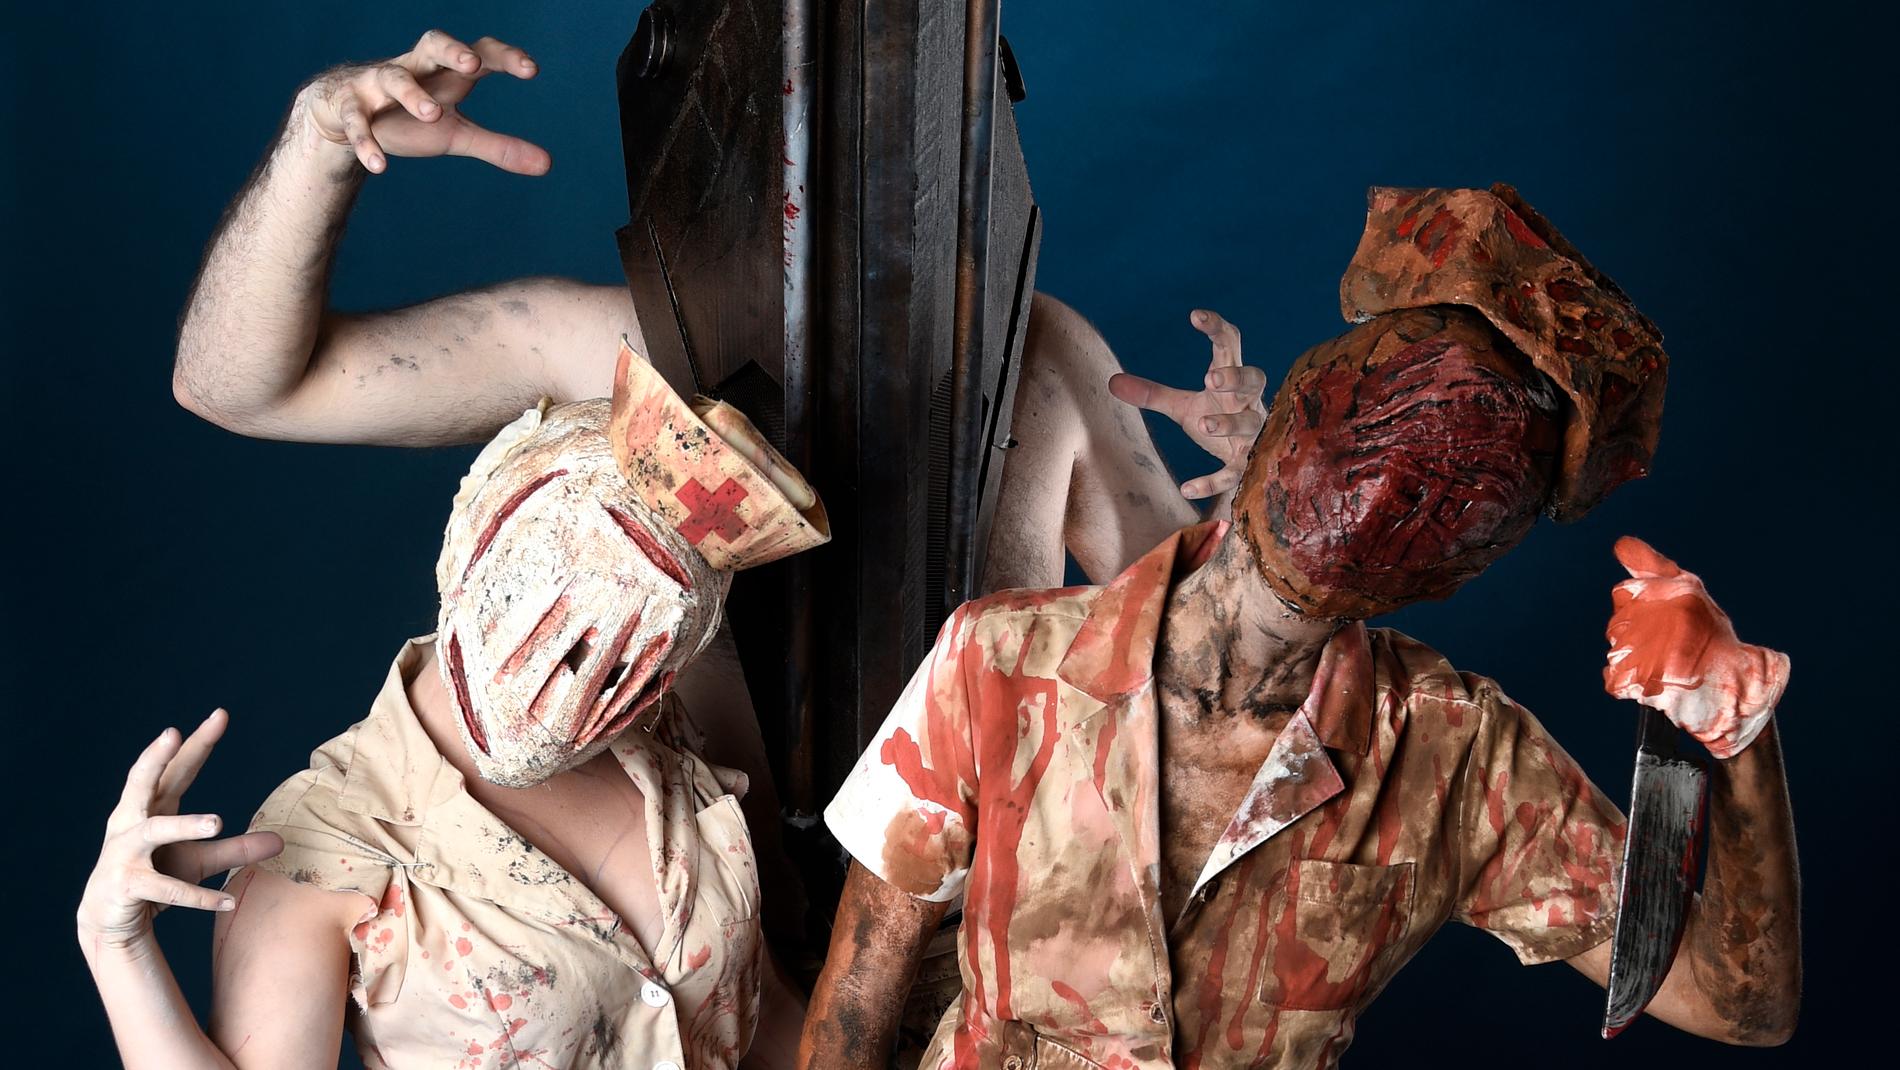 Tre personer utklädda till monster ur "Silent Hill" vid en mässa i San Diego 2017.